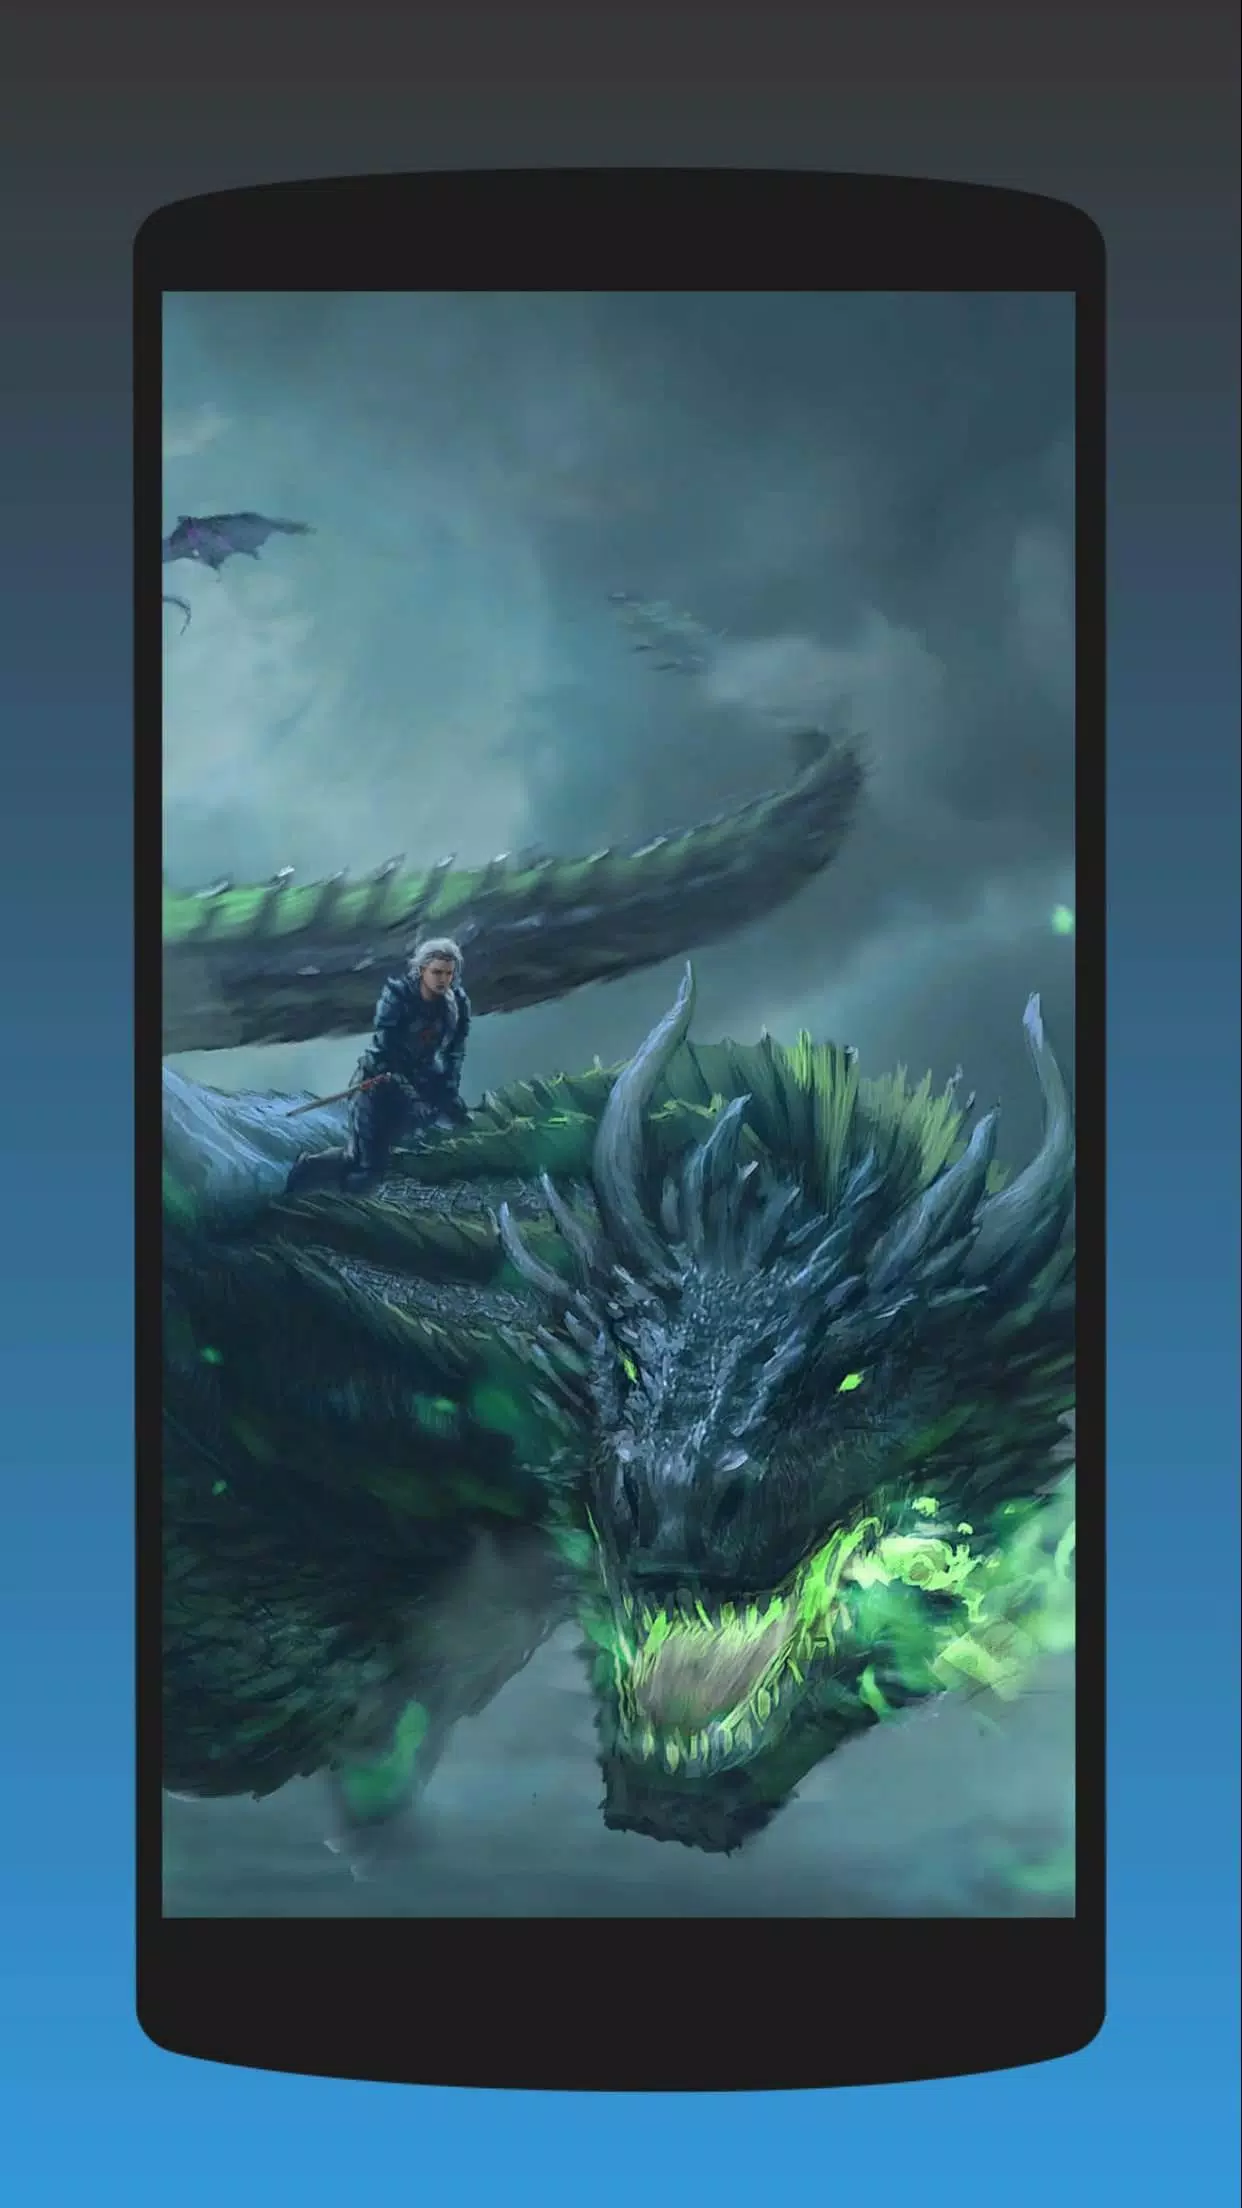 Скачать HQ Dragon живые обои HD APK для Android